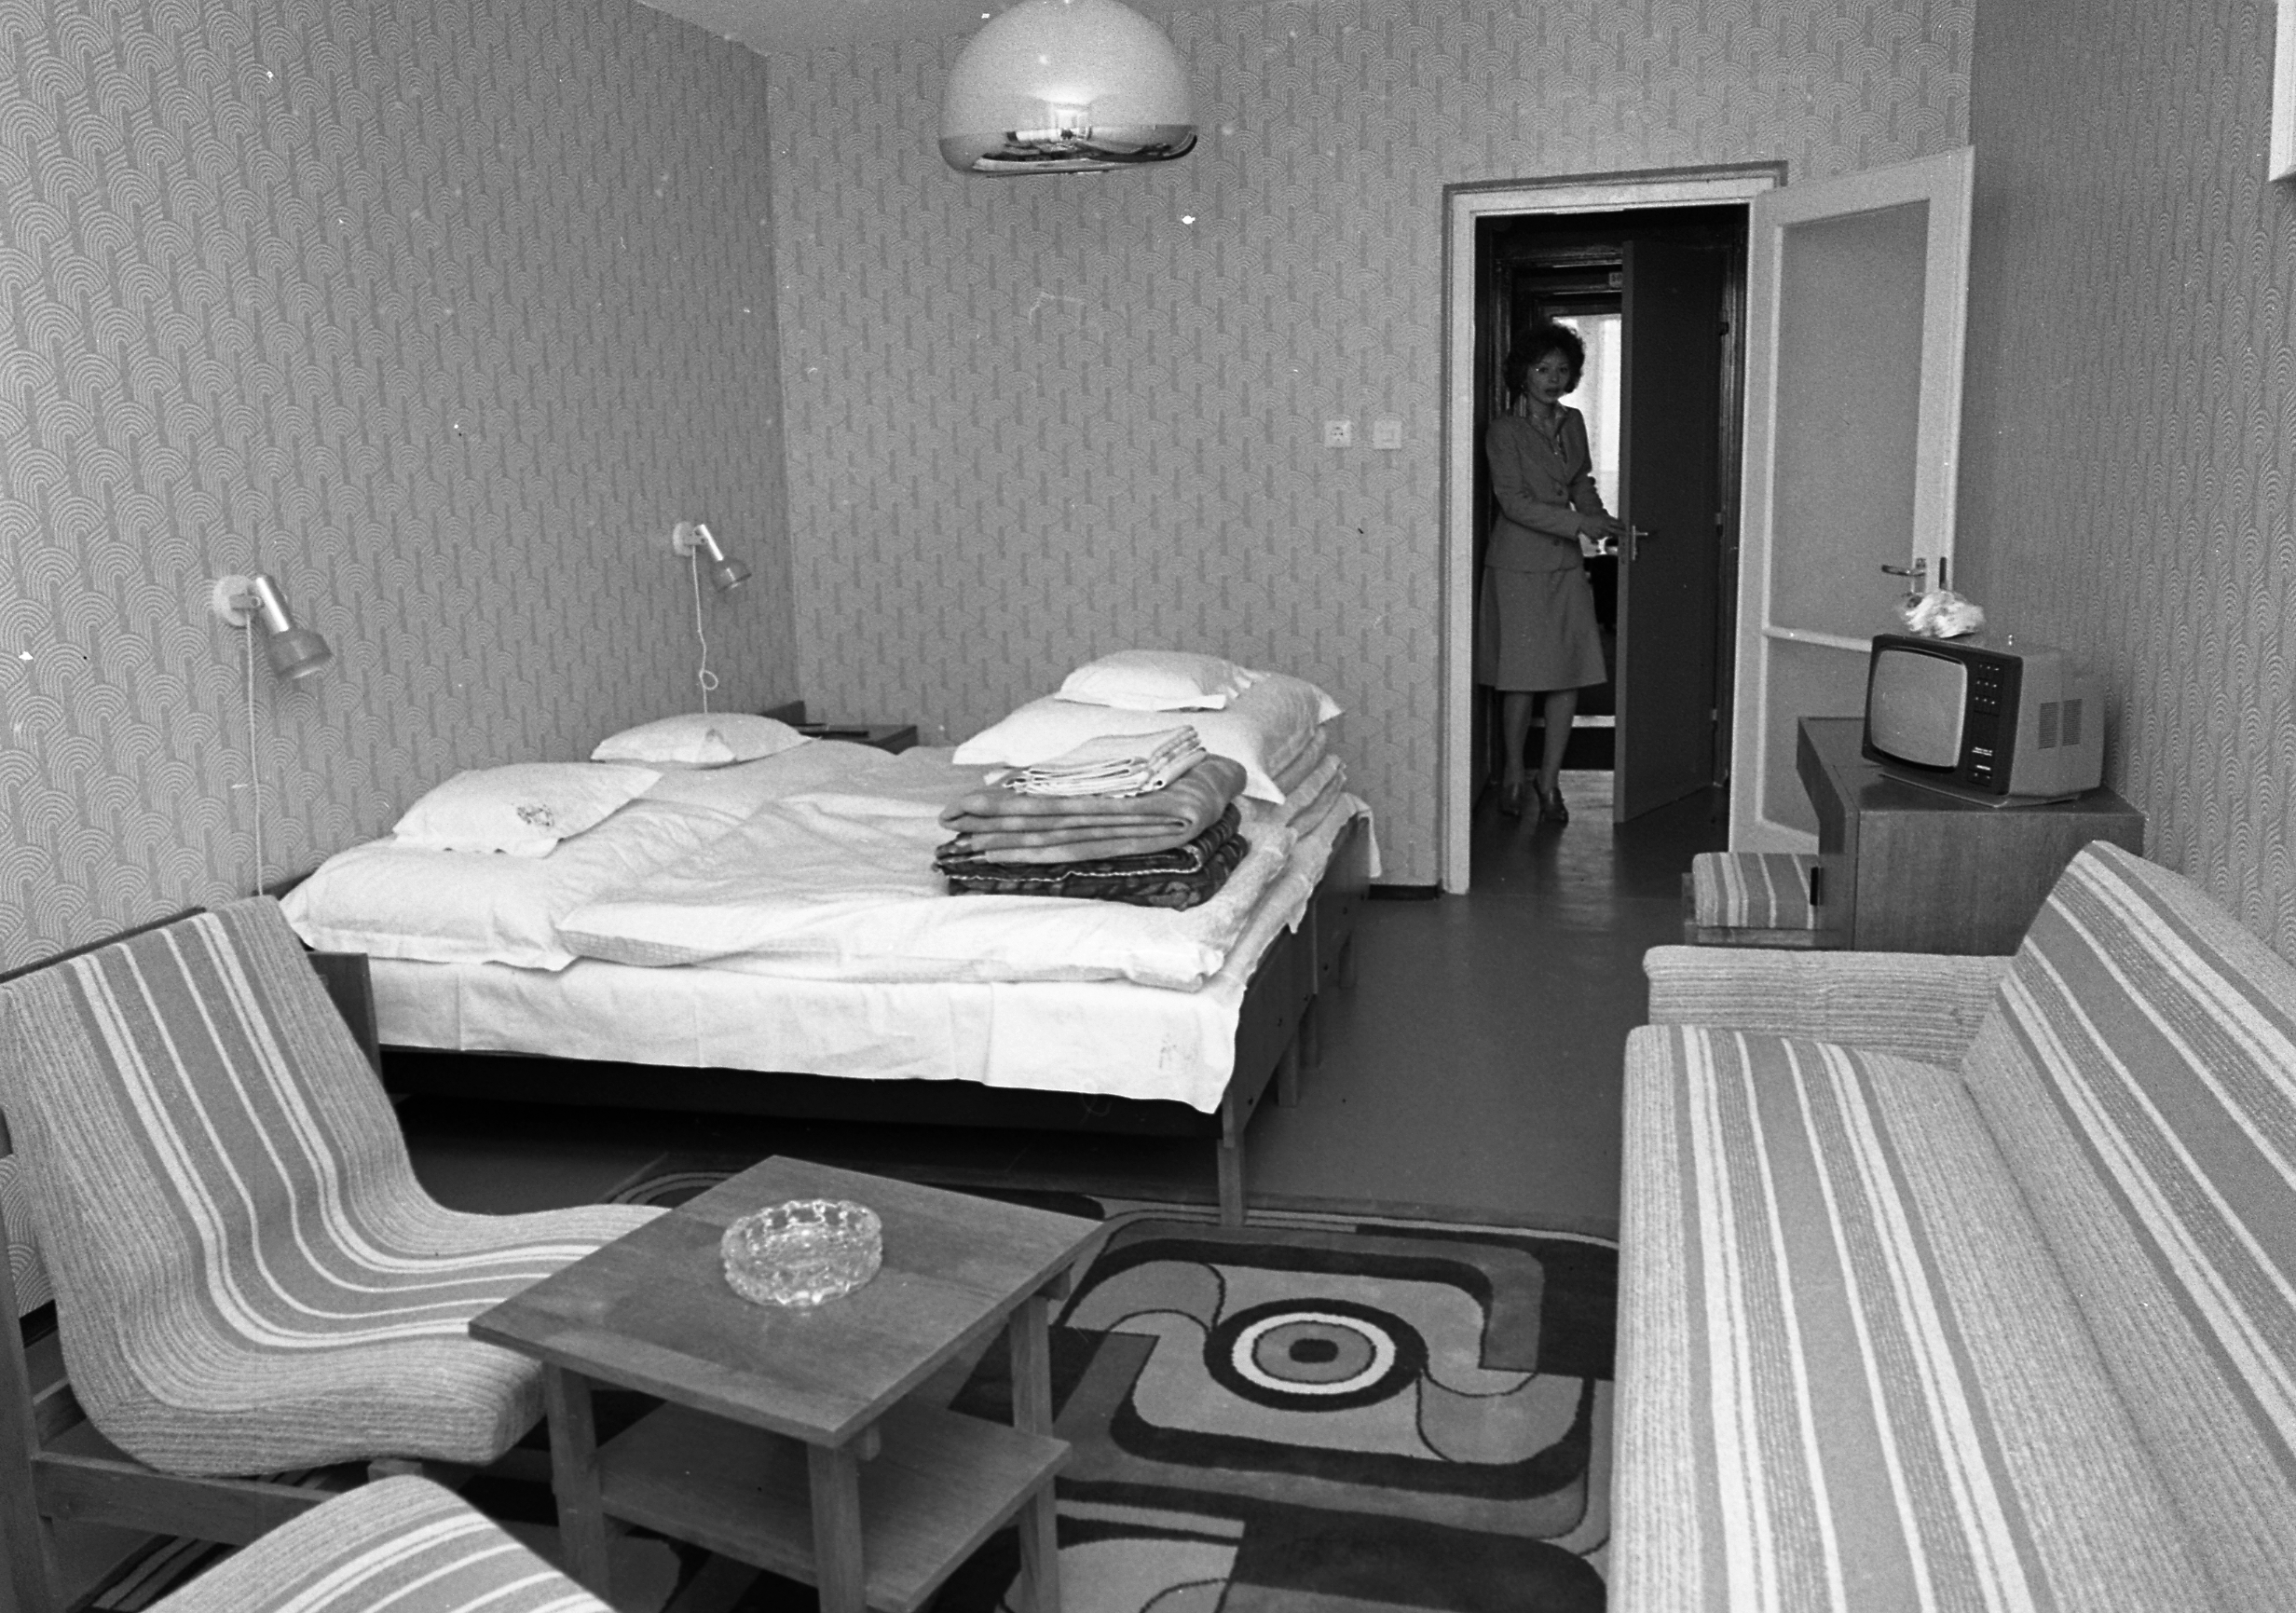 Szállodai szoba a Balatonnál a 80 as években